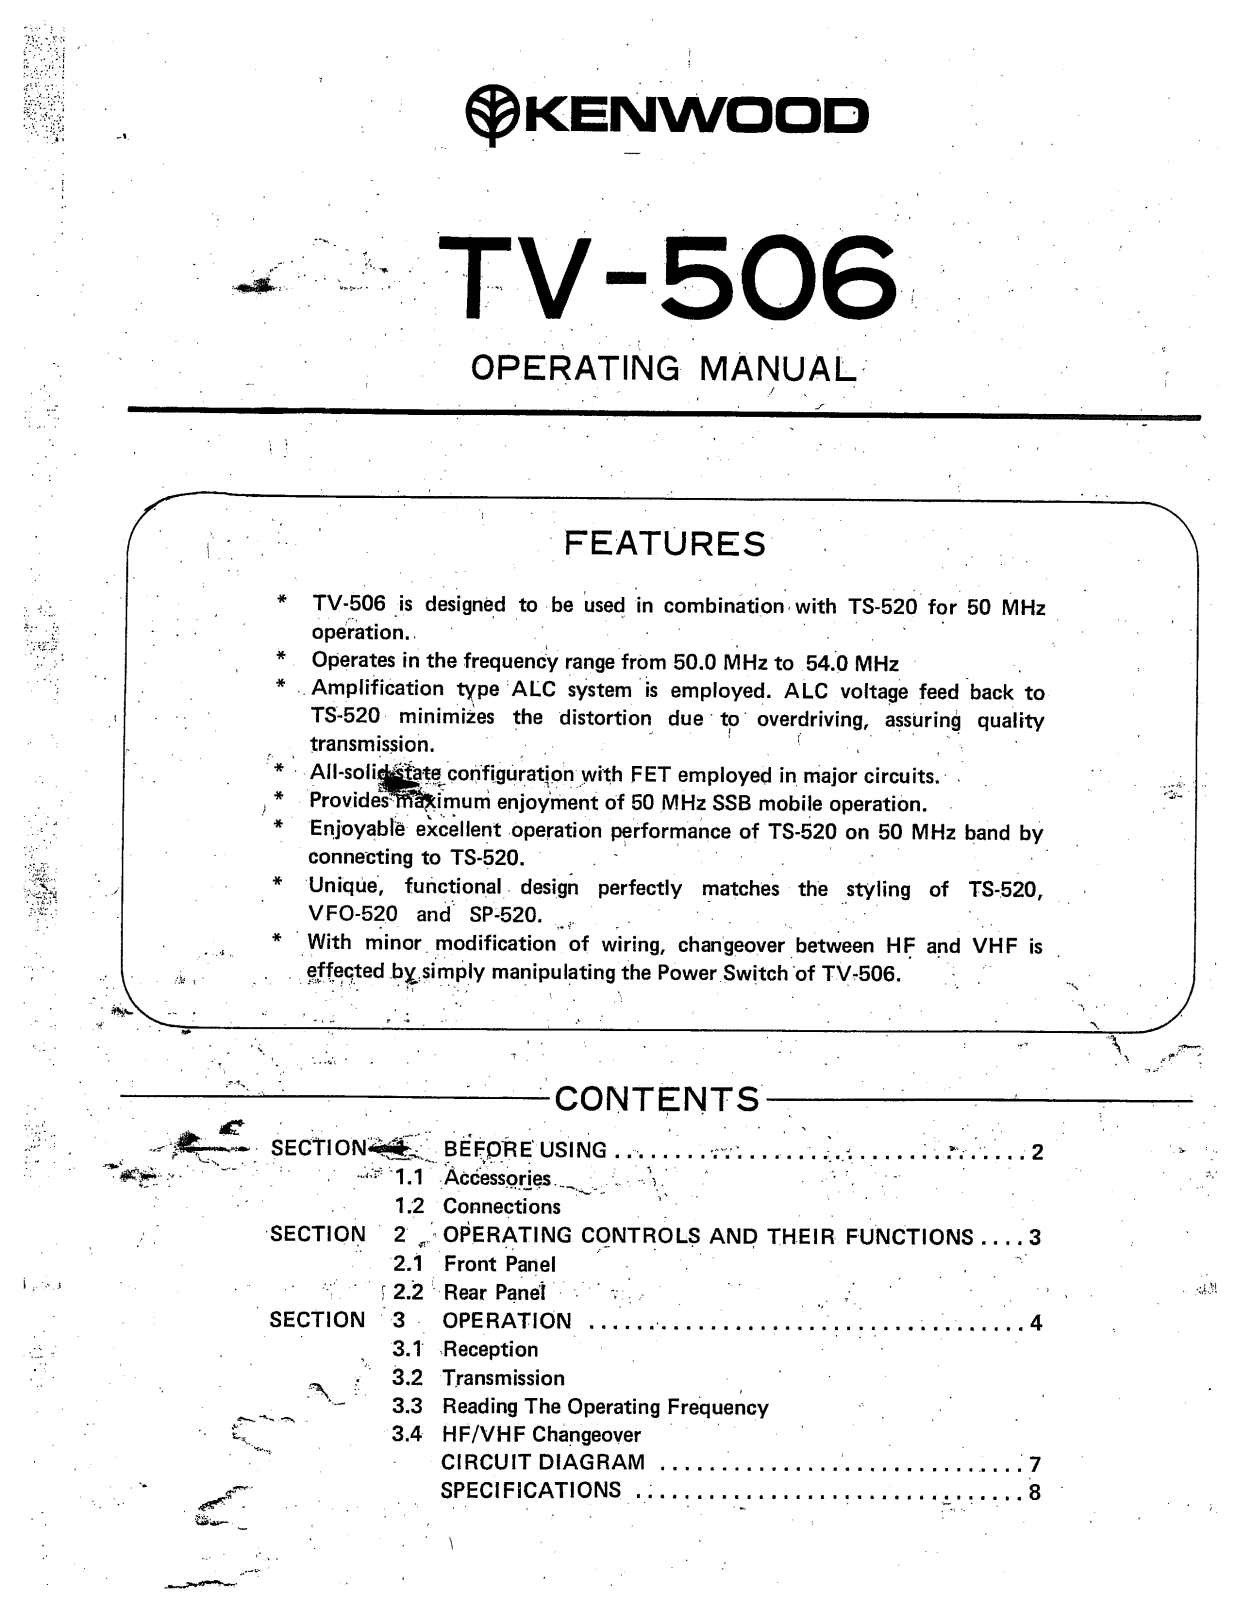 Kenwood TV-506 Service manual